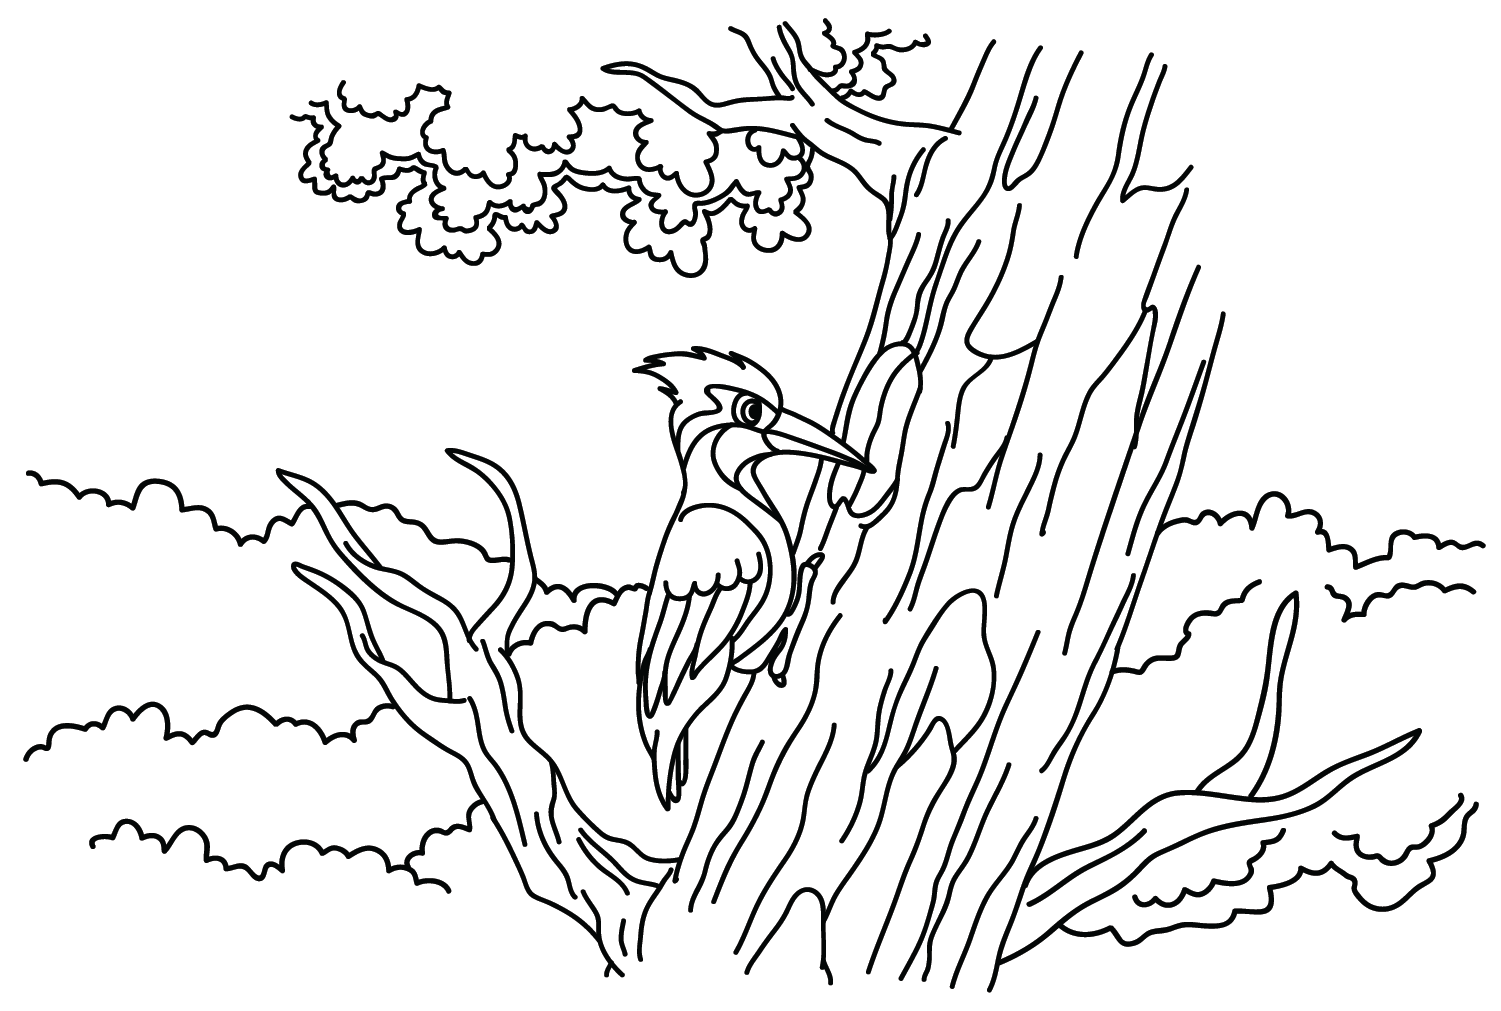 Dibujo para colorear de un pájaro carpintero de Woodpecker